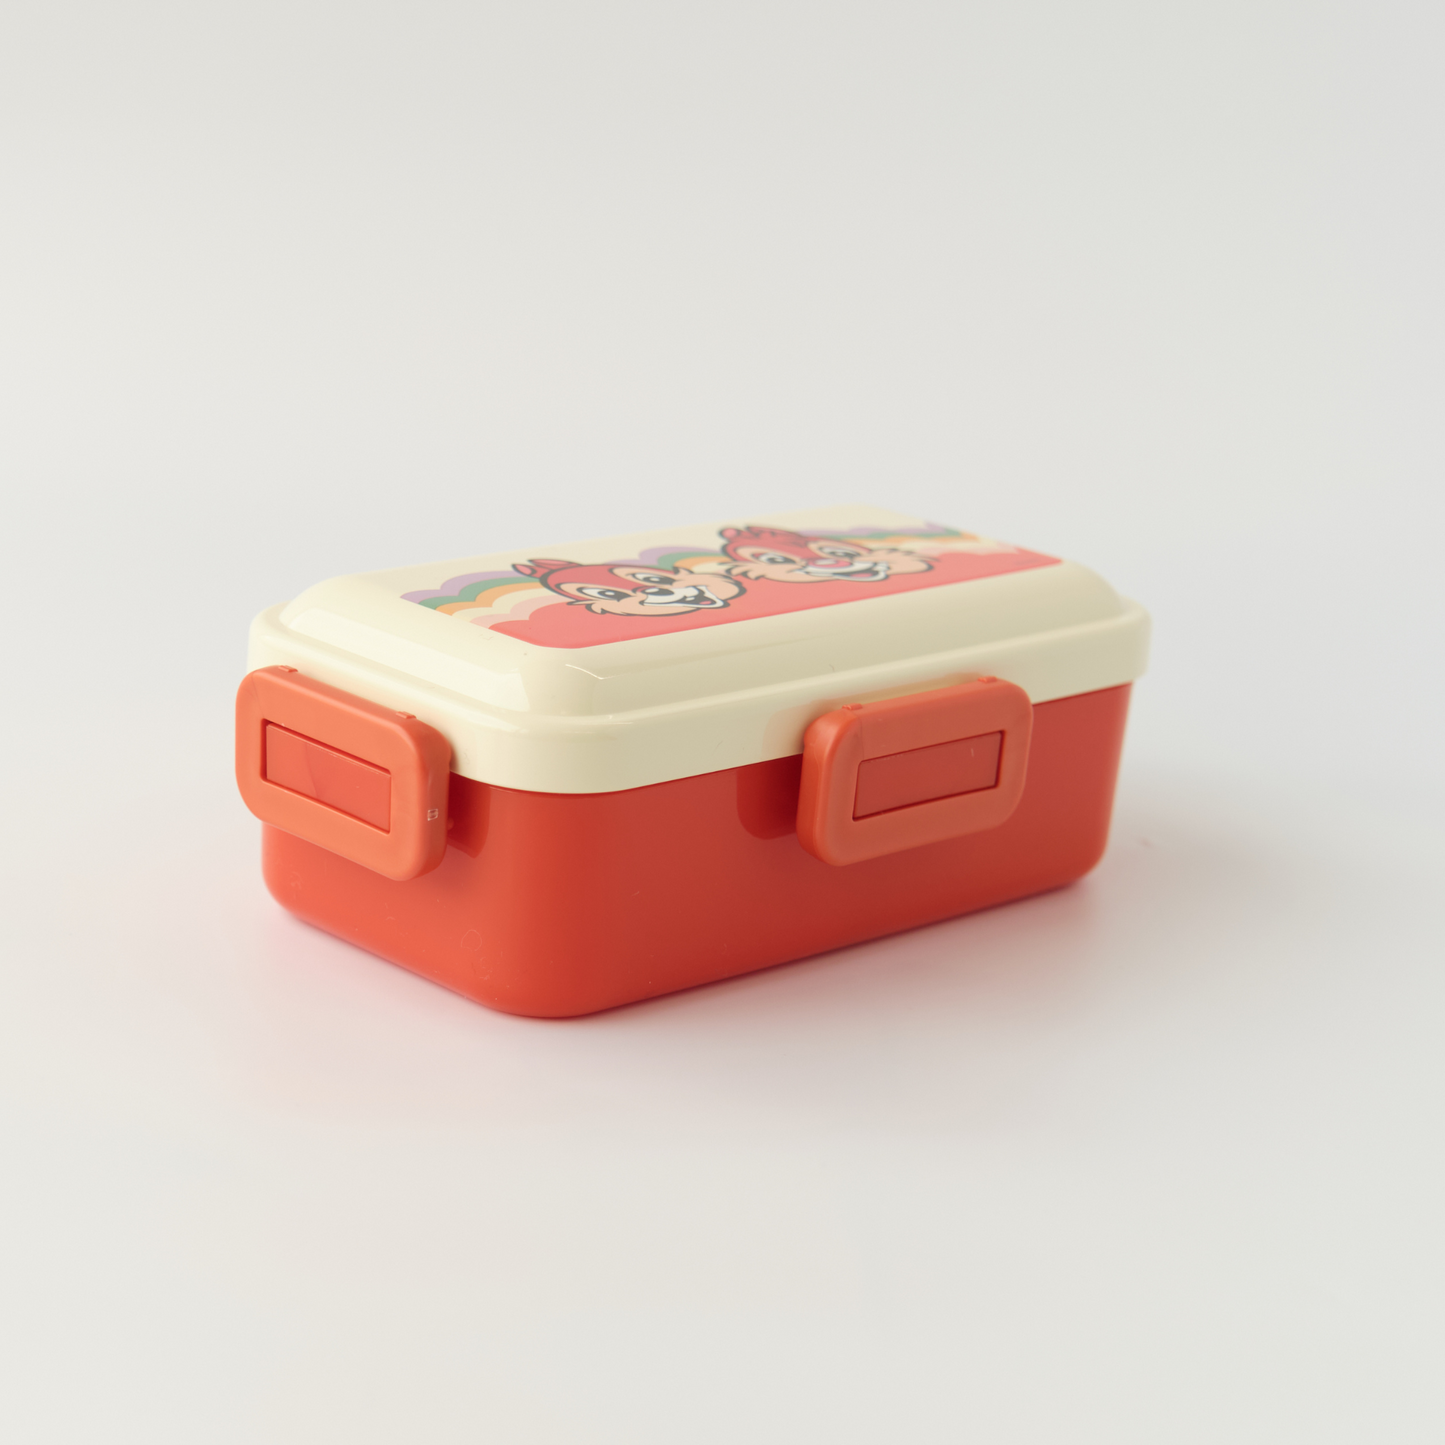 Retro Chip and Dale Slim Bento Box | 530mL